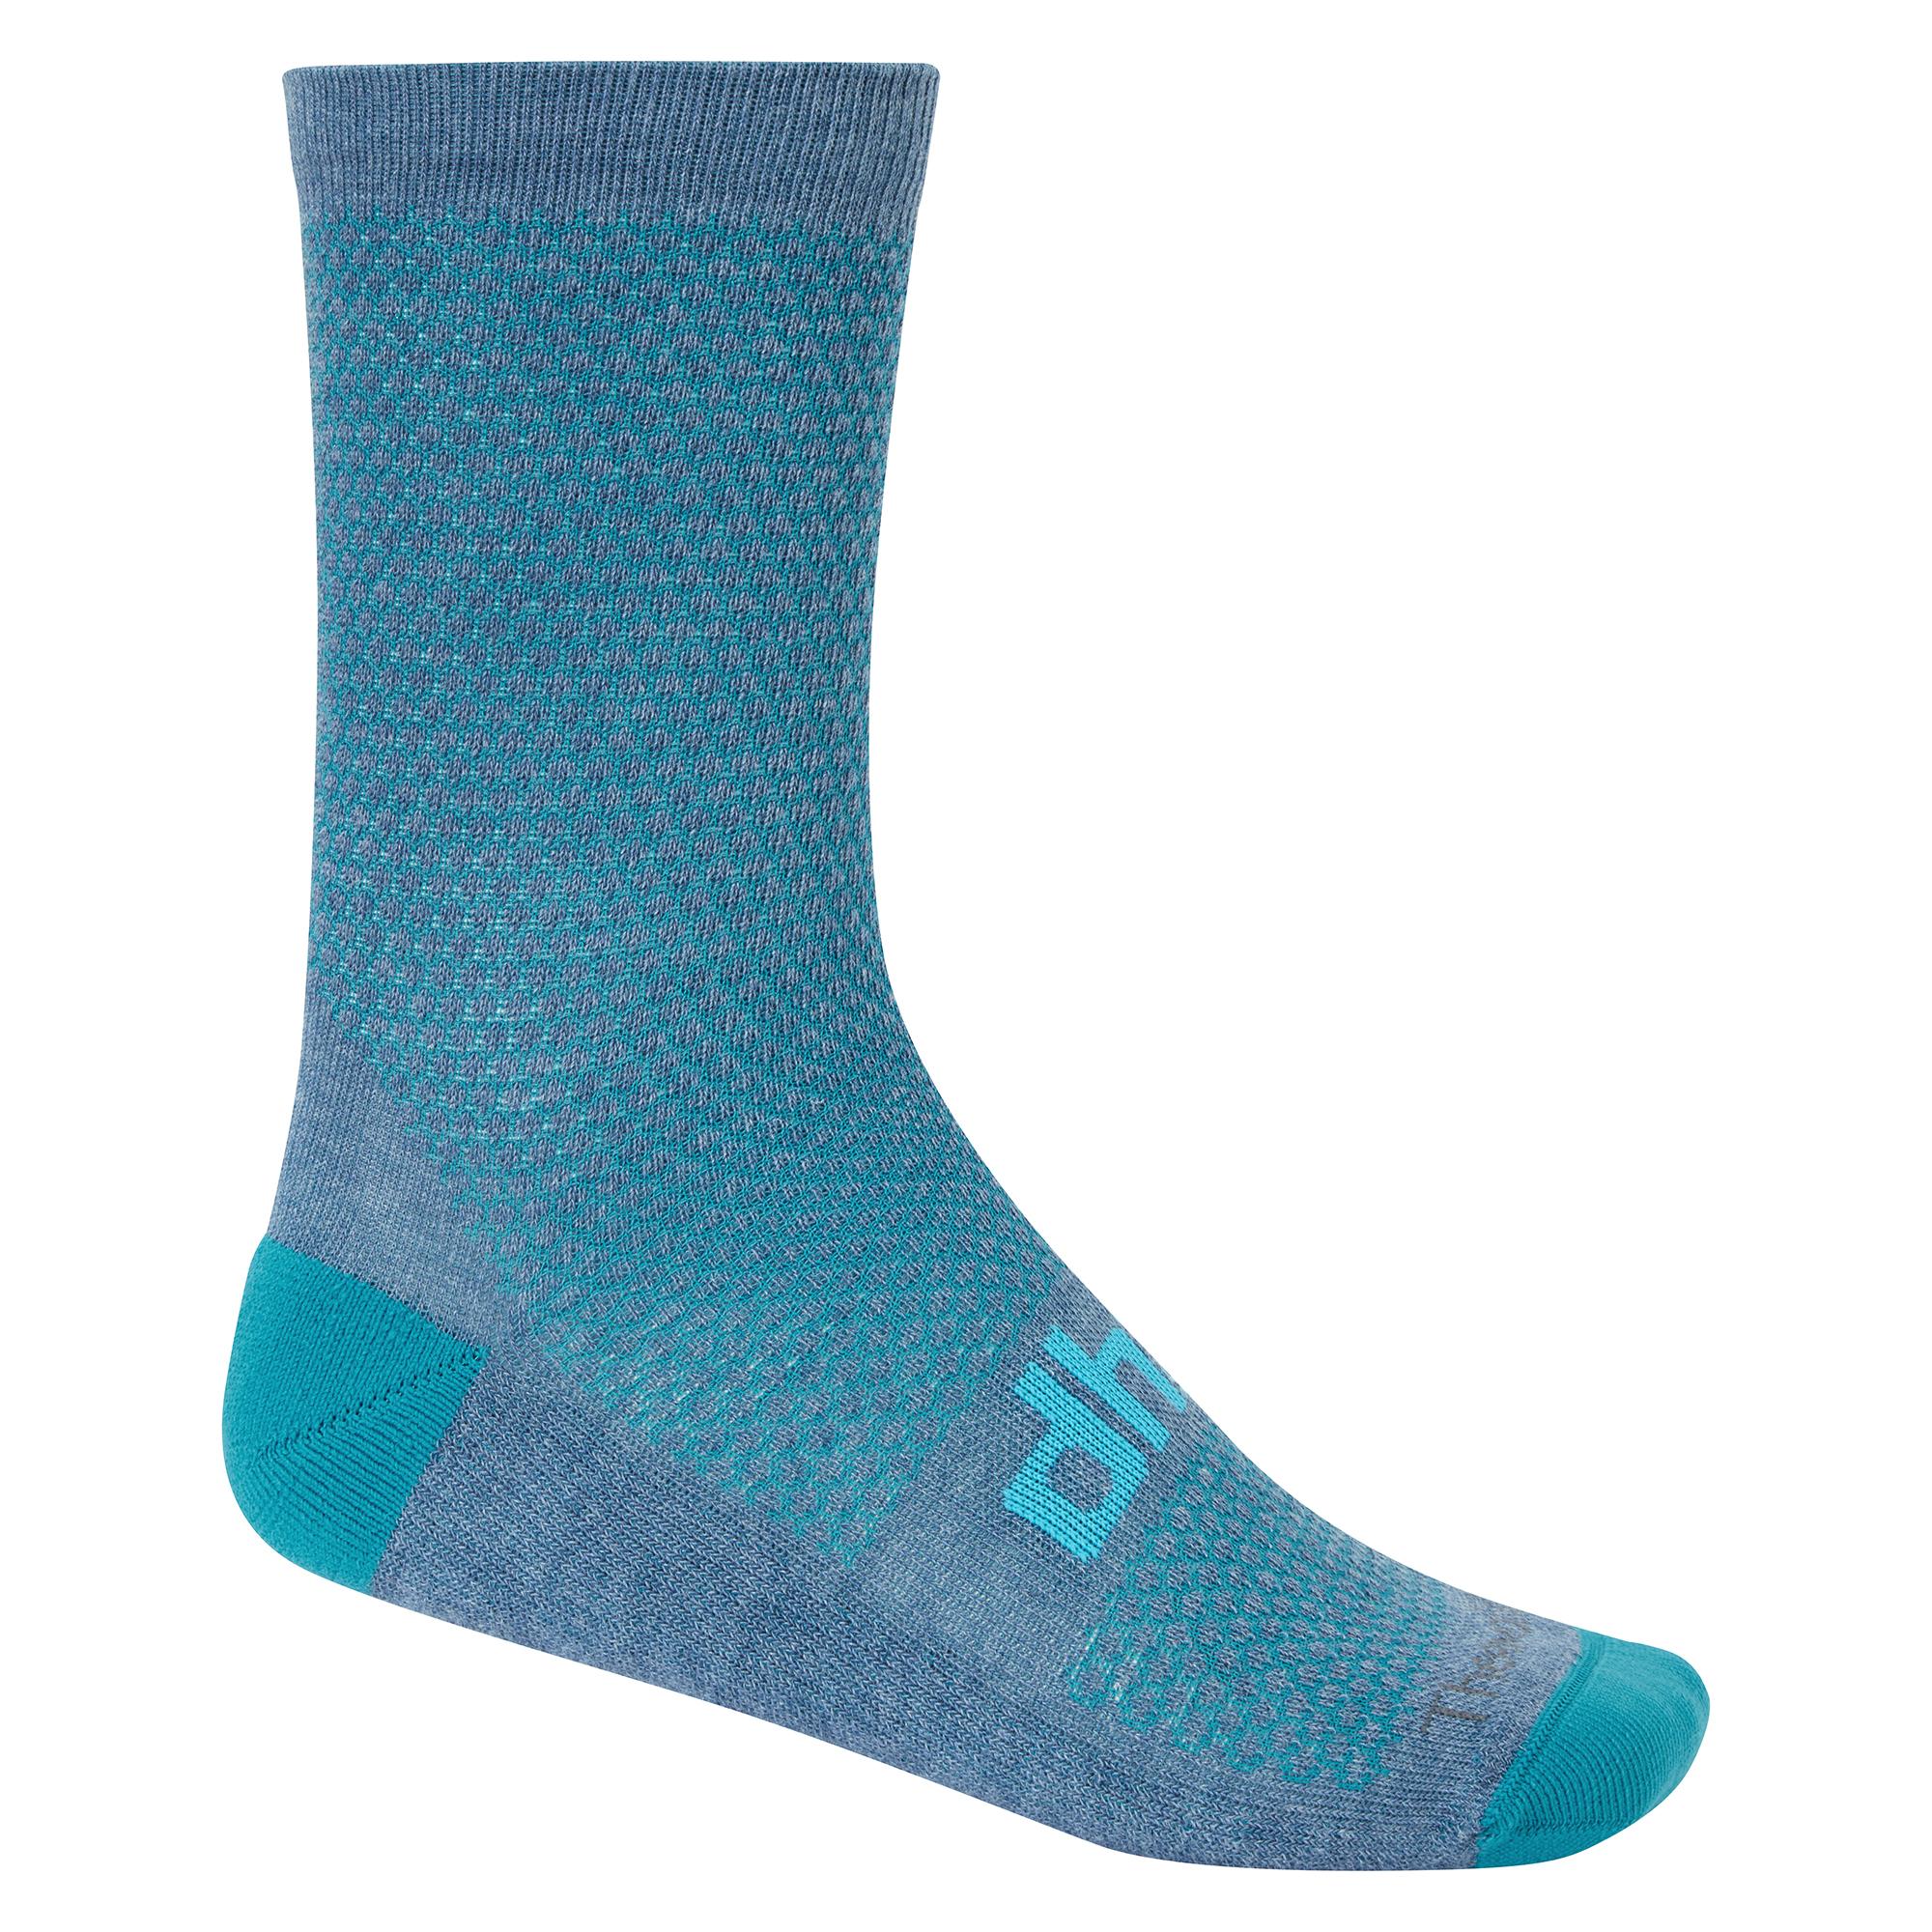 Dhb Blok Classic Thermal Sock 16cm - Blue/teal